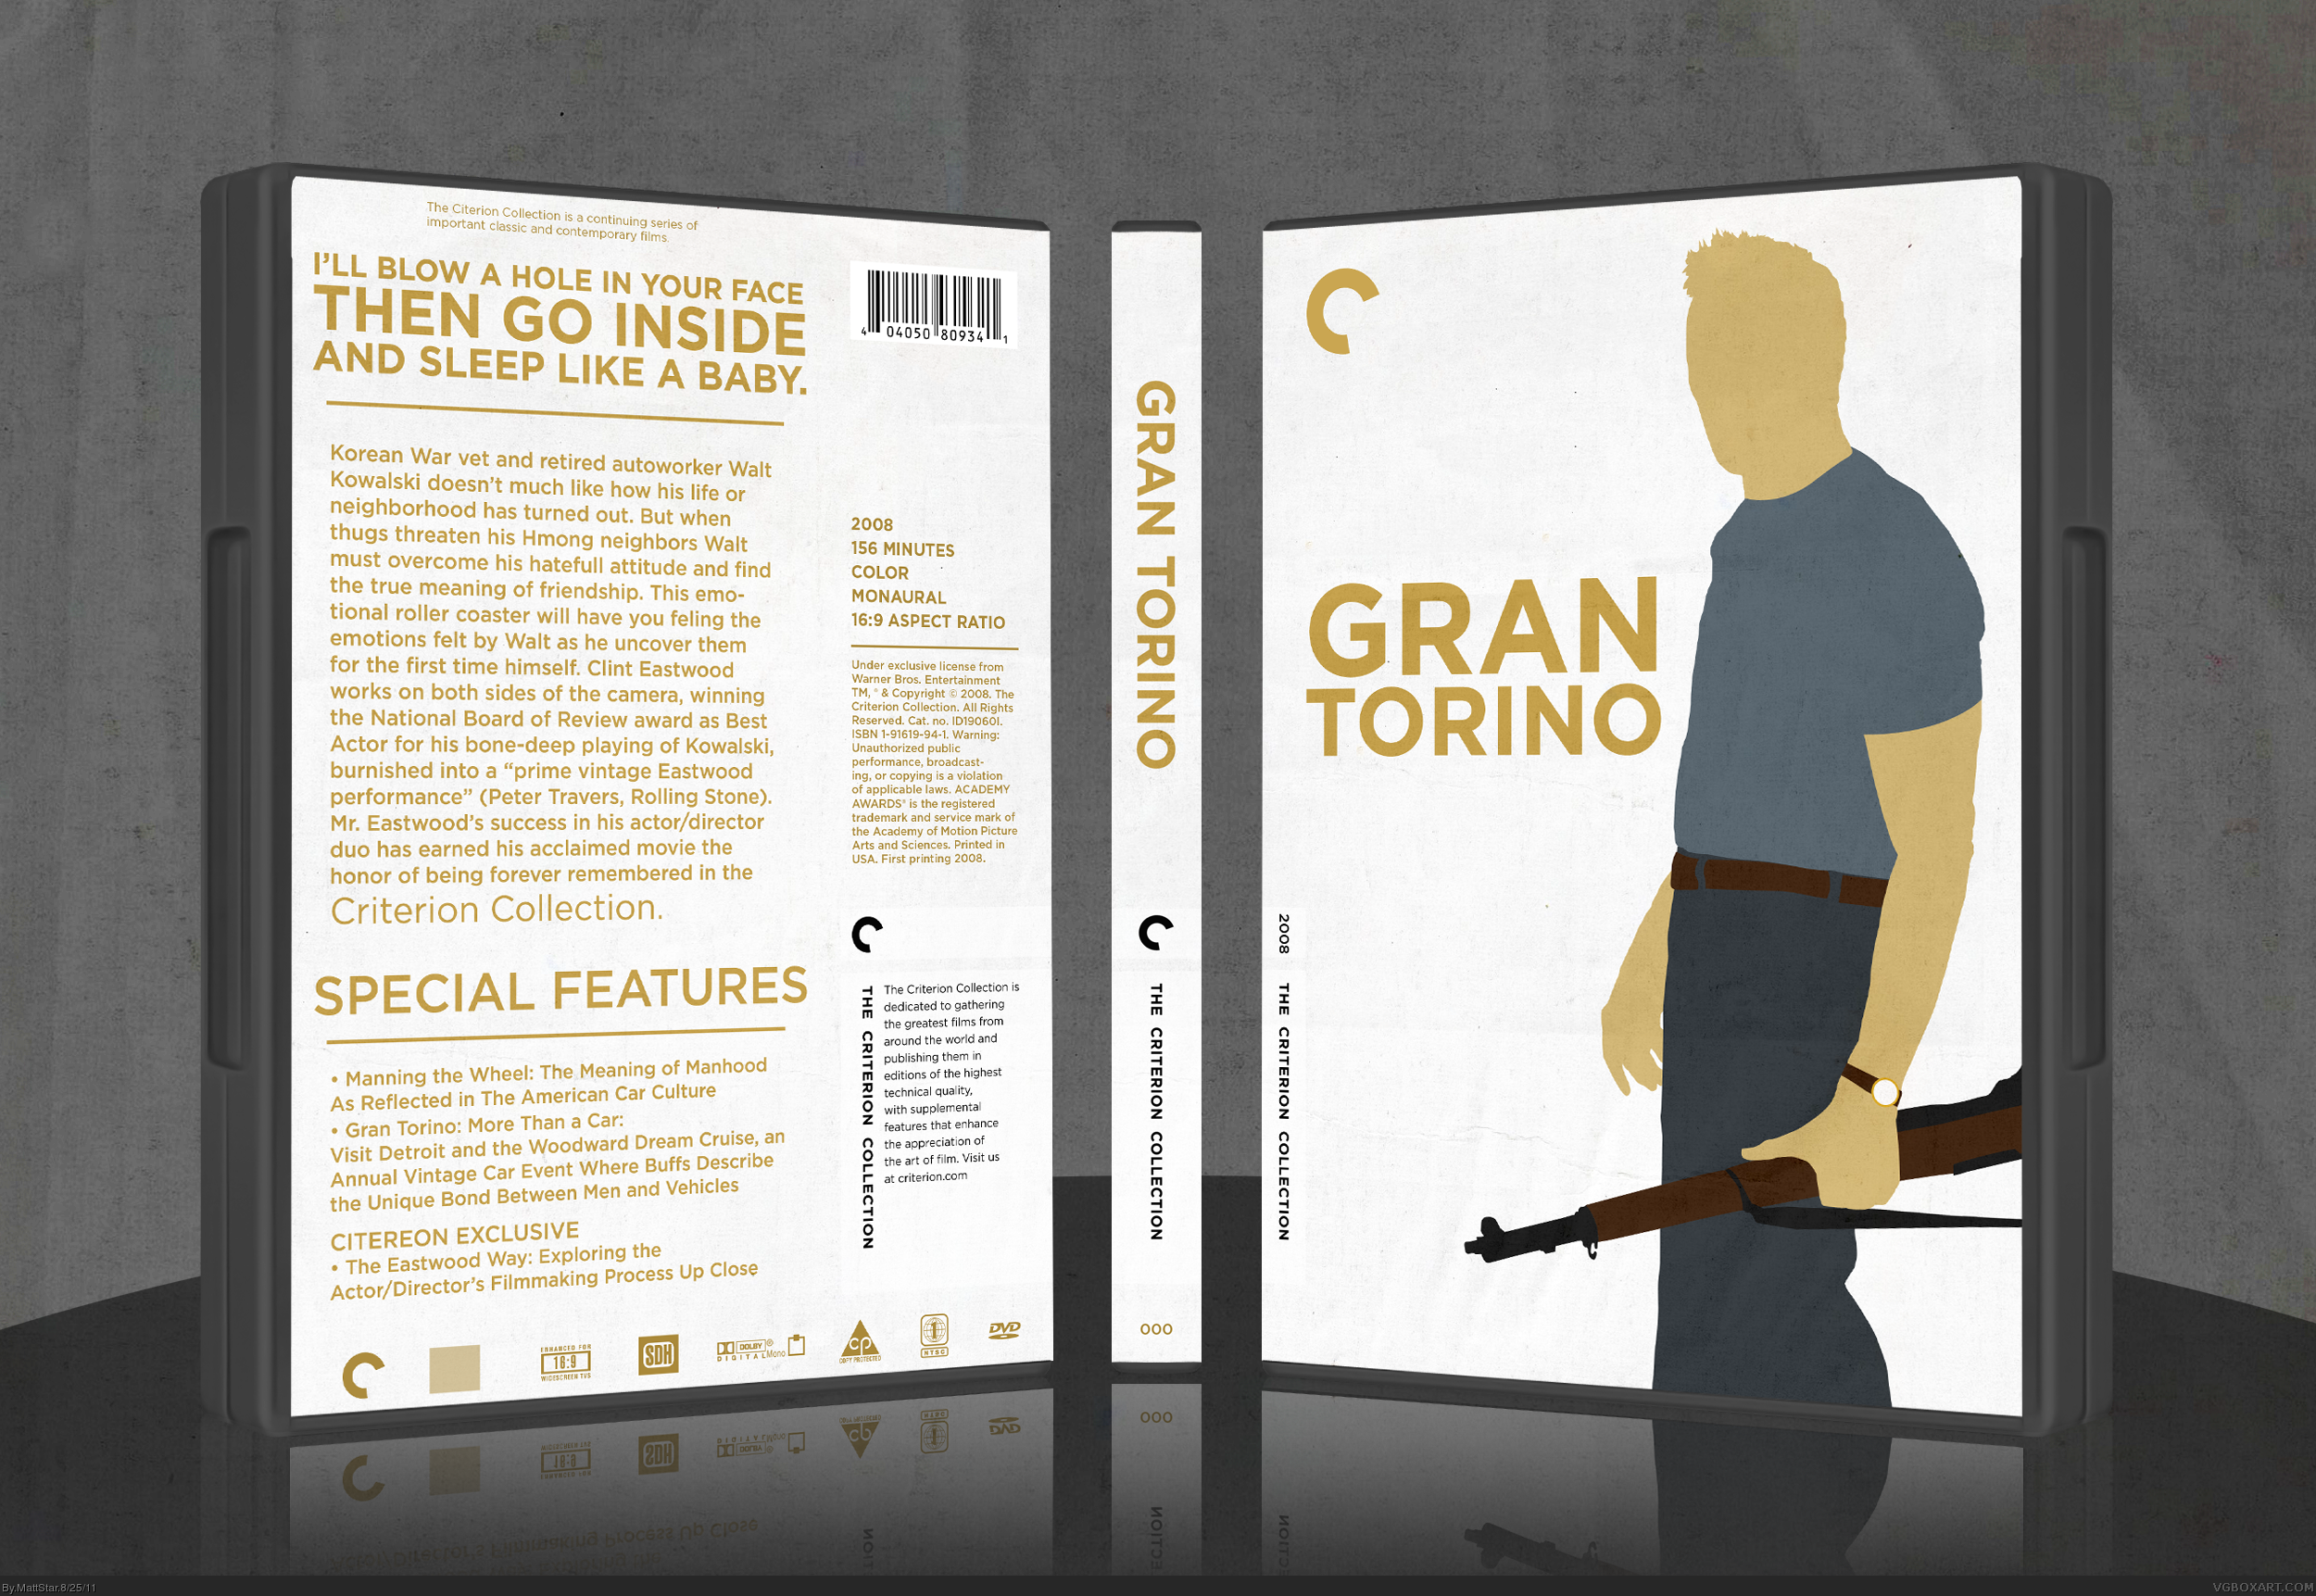 Gran Torino box cover